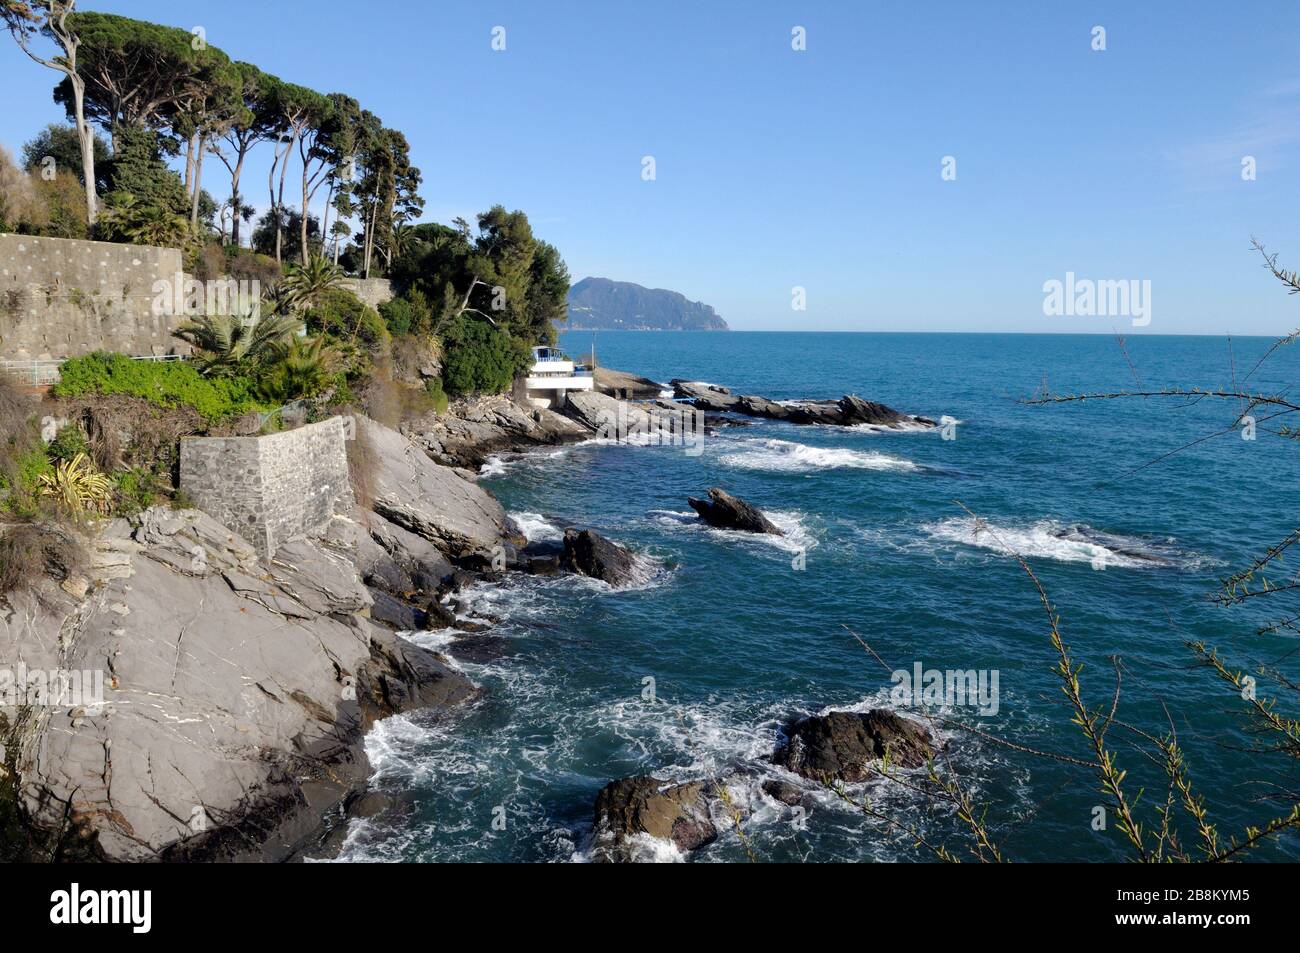 Anita Garibaldi camino en el mar, Nervi, Liguria, Italia, Europa Foto de stock